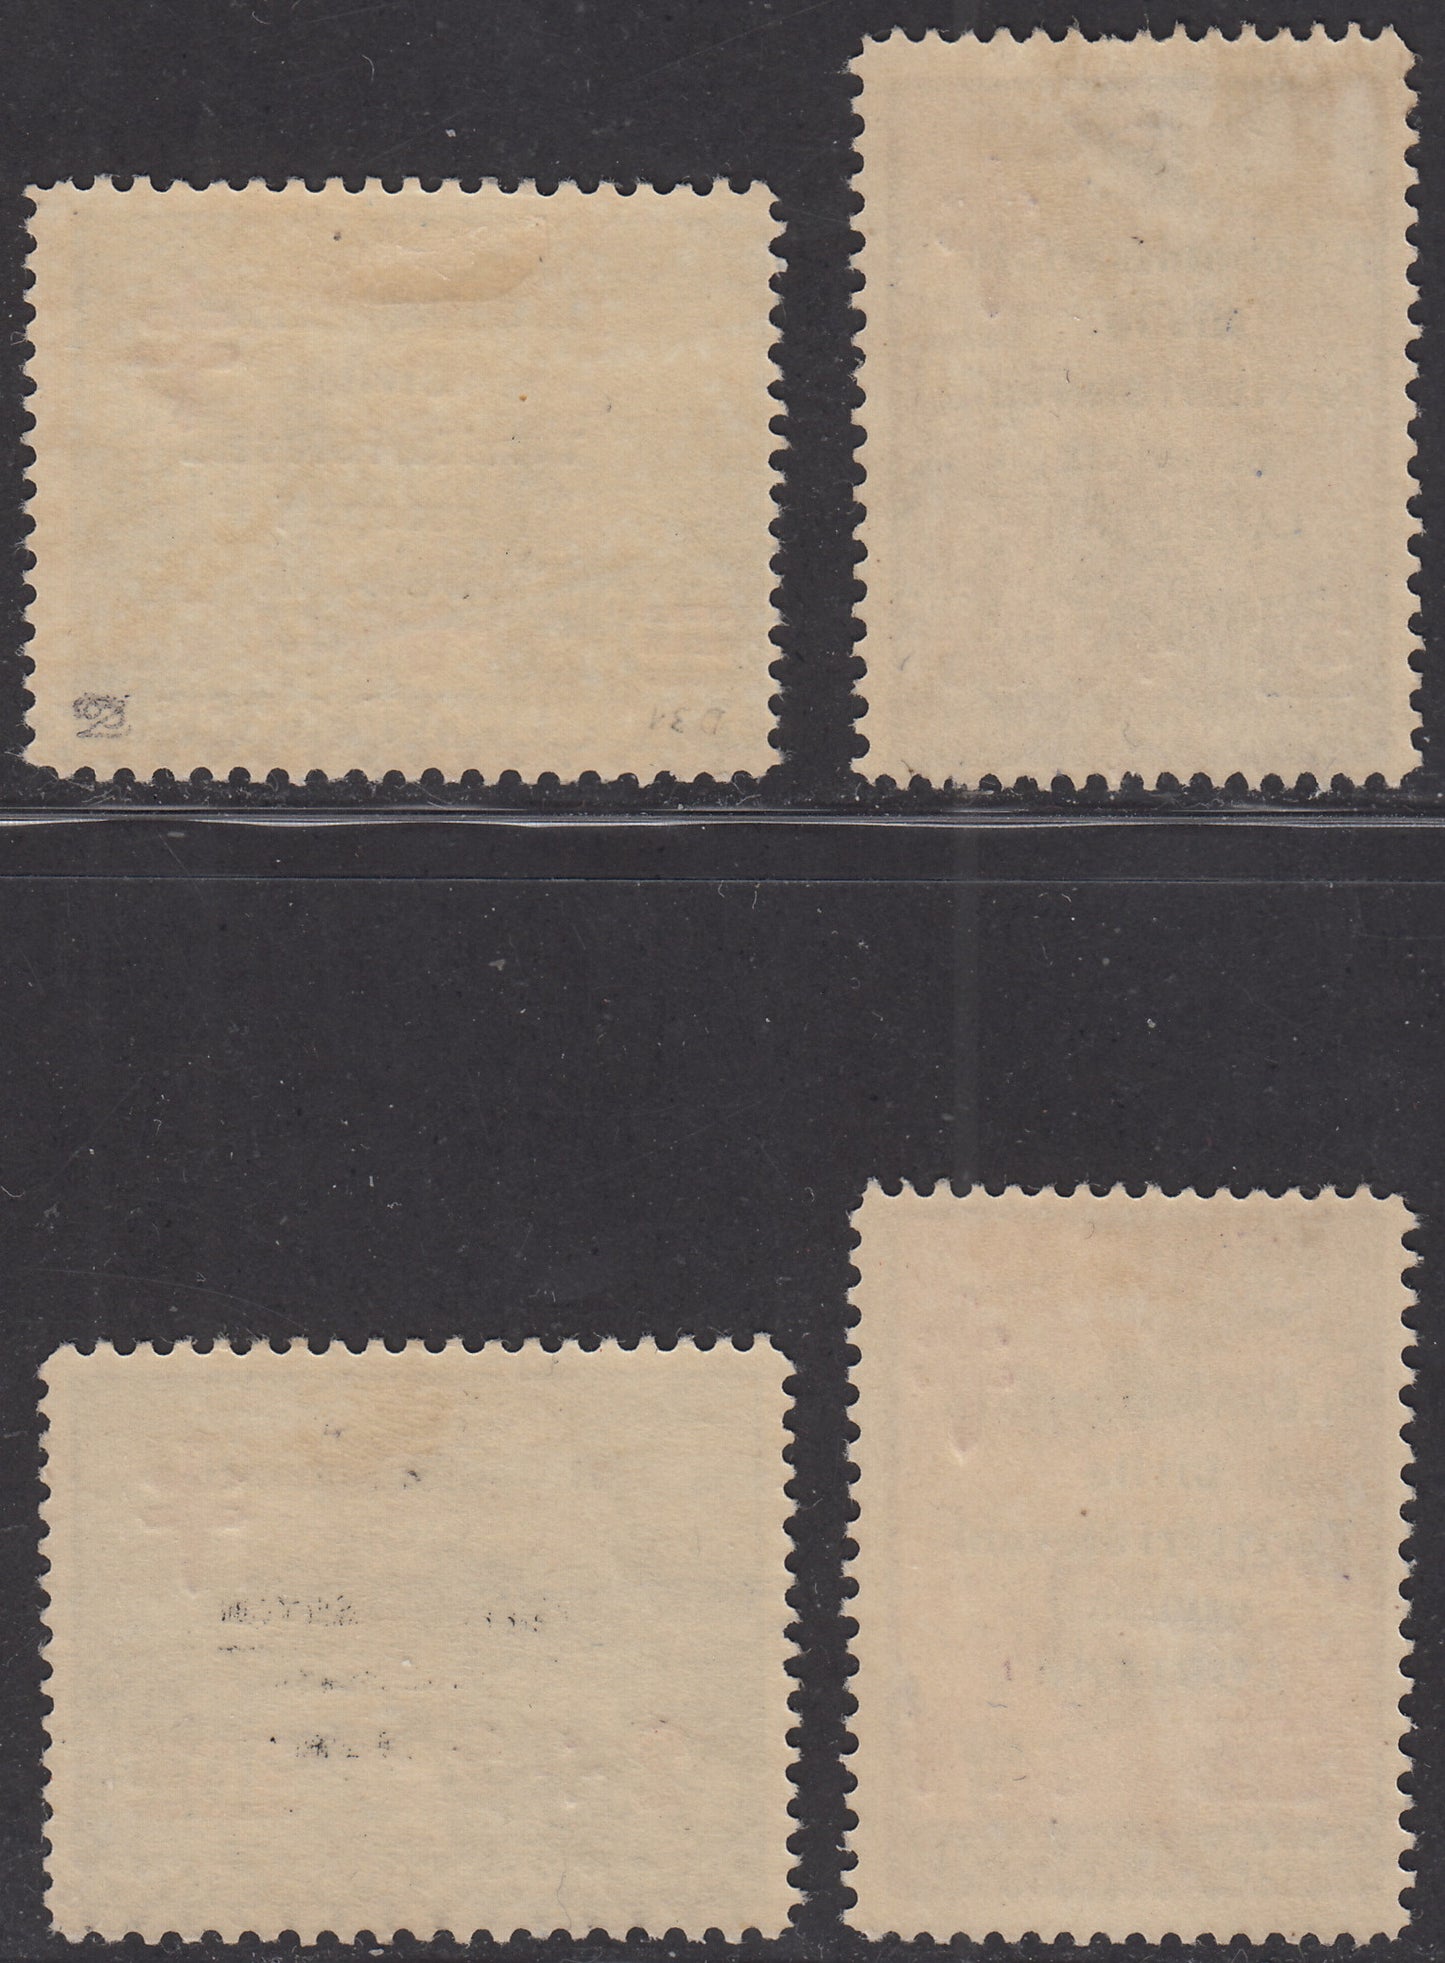 1941 - Occupazione Italiana della Lubiana, francobolli di Croce Rossa soprastampati R. Commissariato, nuovi gomma originale (35/38)